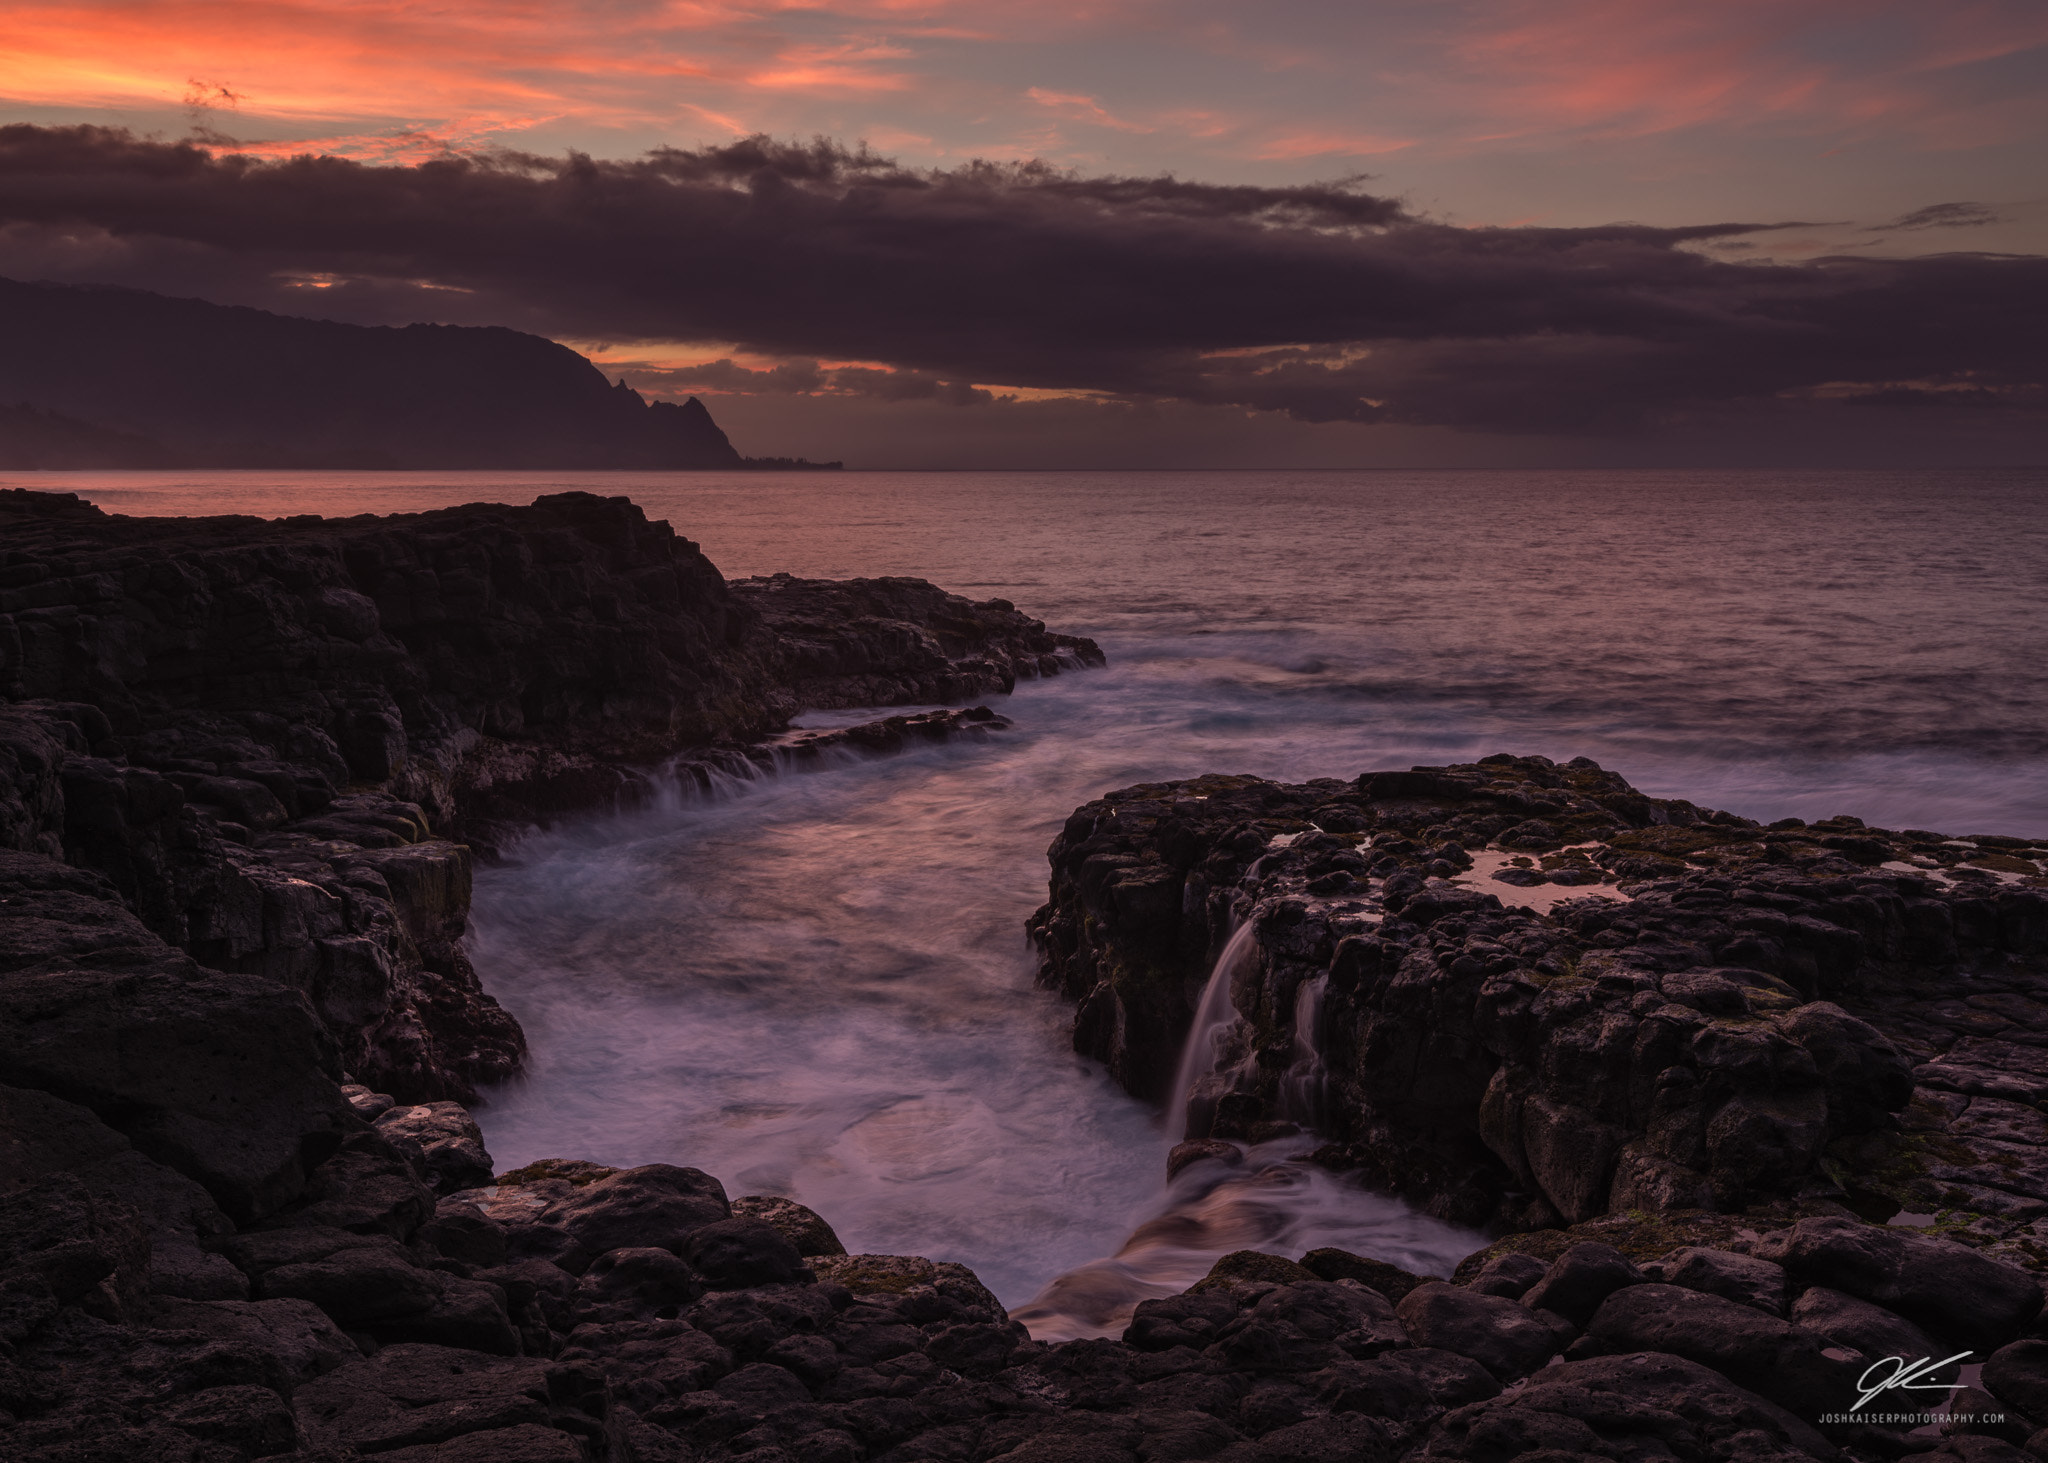 Nikon D610 sample photo. Evening’s last light near queen's bath, kauai, hawaii photography